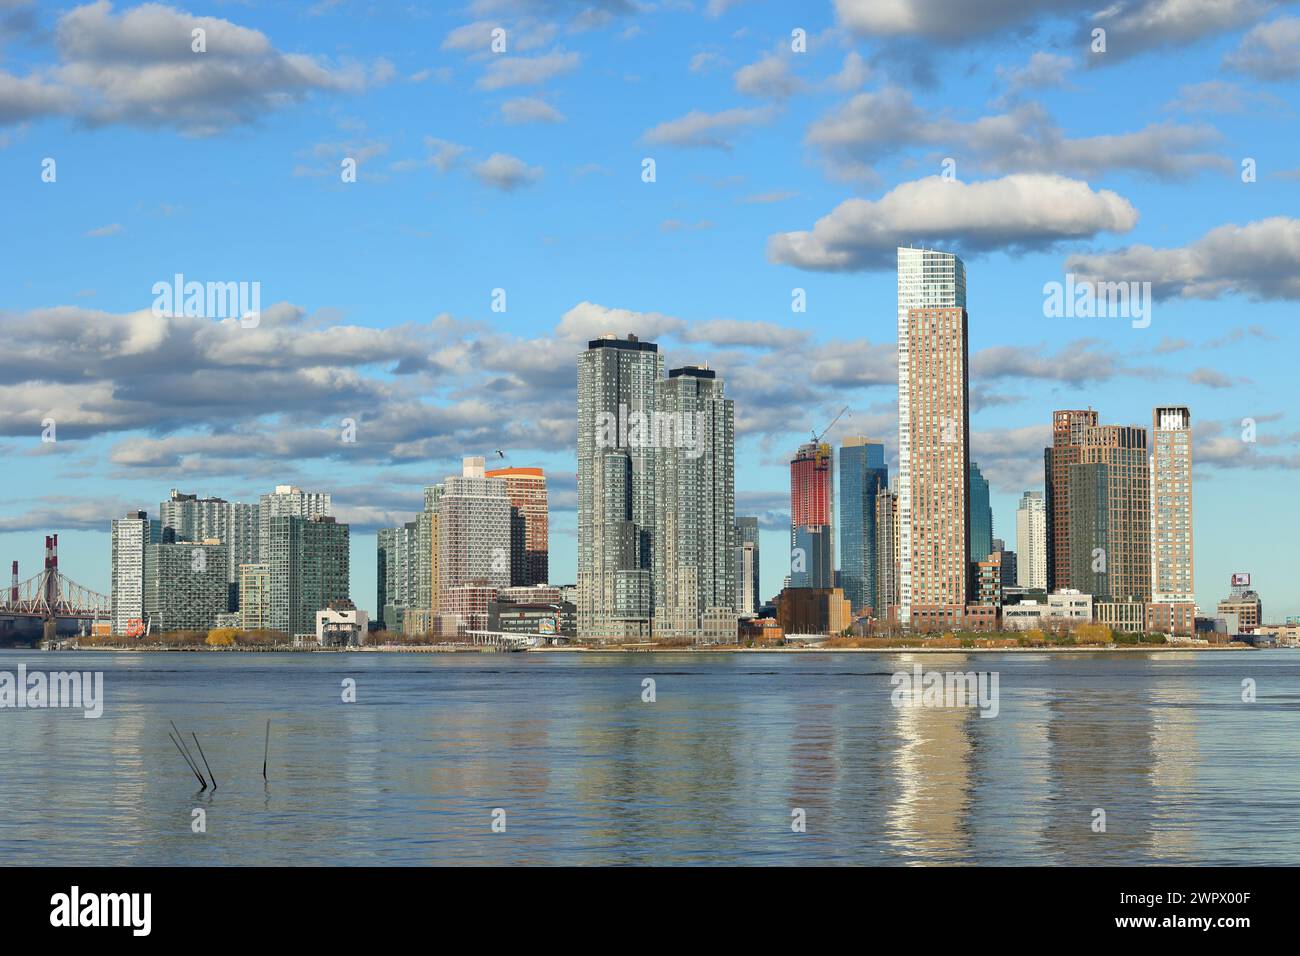 Hunters Point e il lungomare di Long Island City dall'altra parte dell'East River; i numerosi edifici in vetro e cemento sul lungomare. Foto Stock